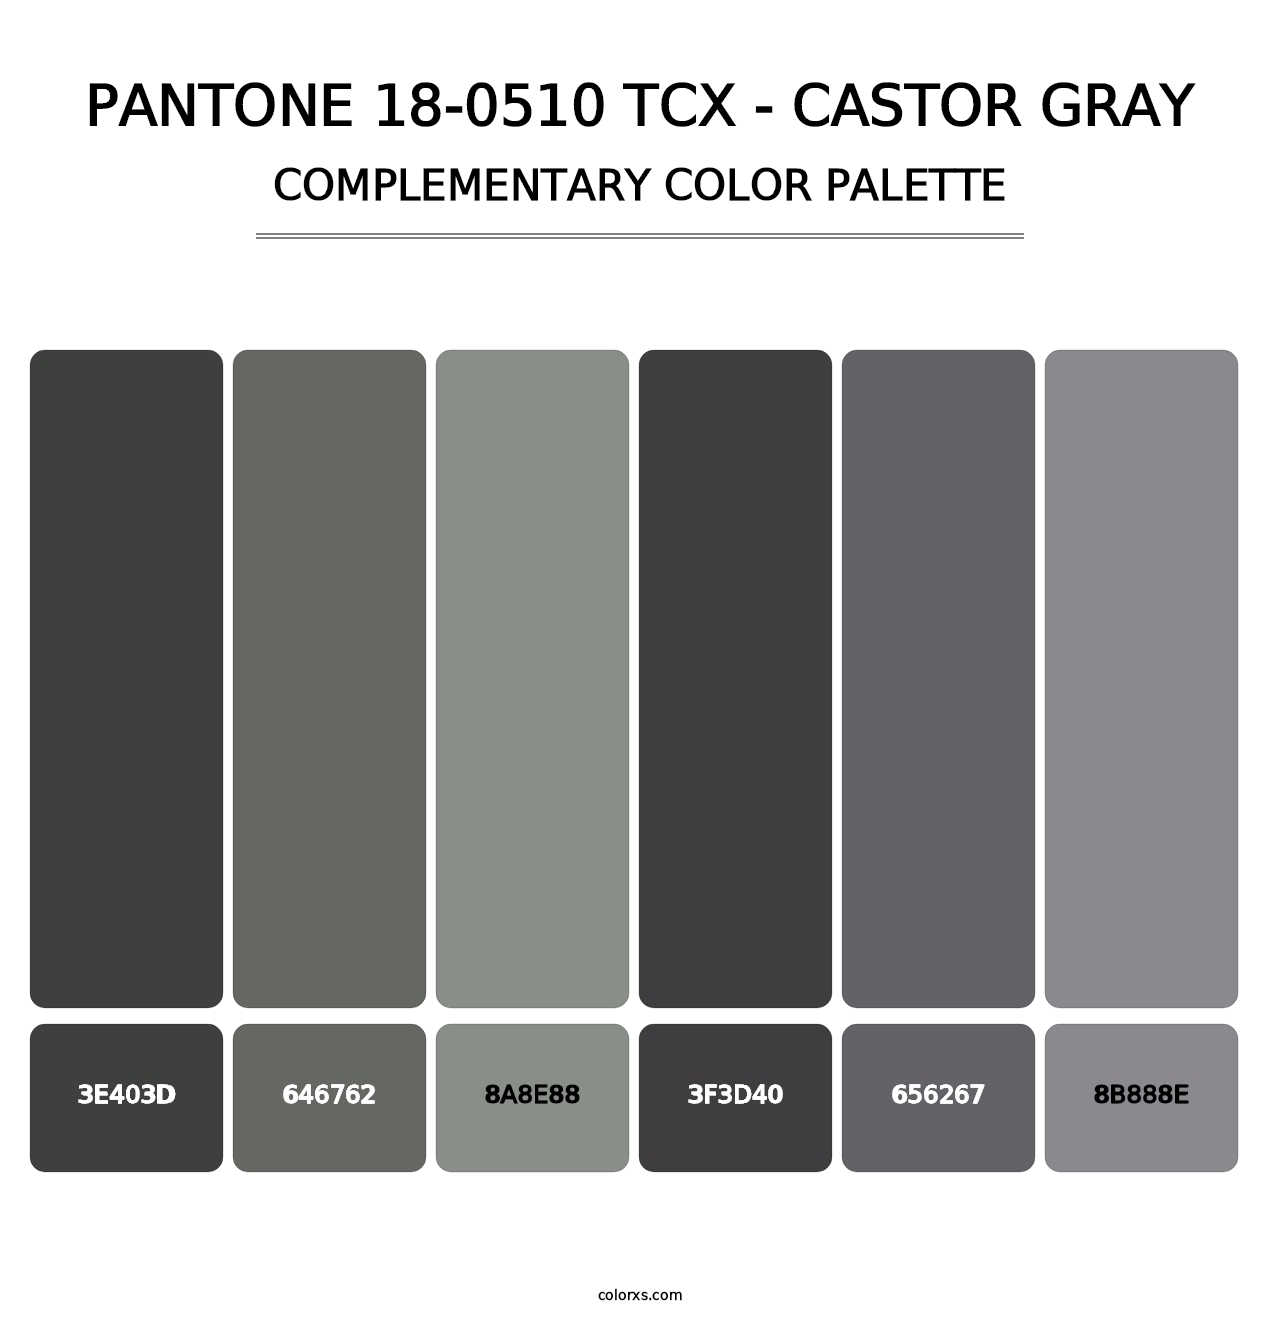 PANTONE 18-0510 TCX - Castor Gray - Complementary Color Palette